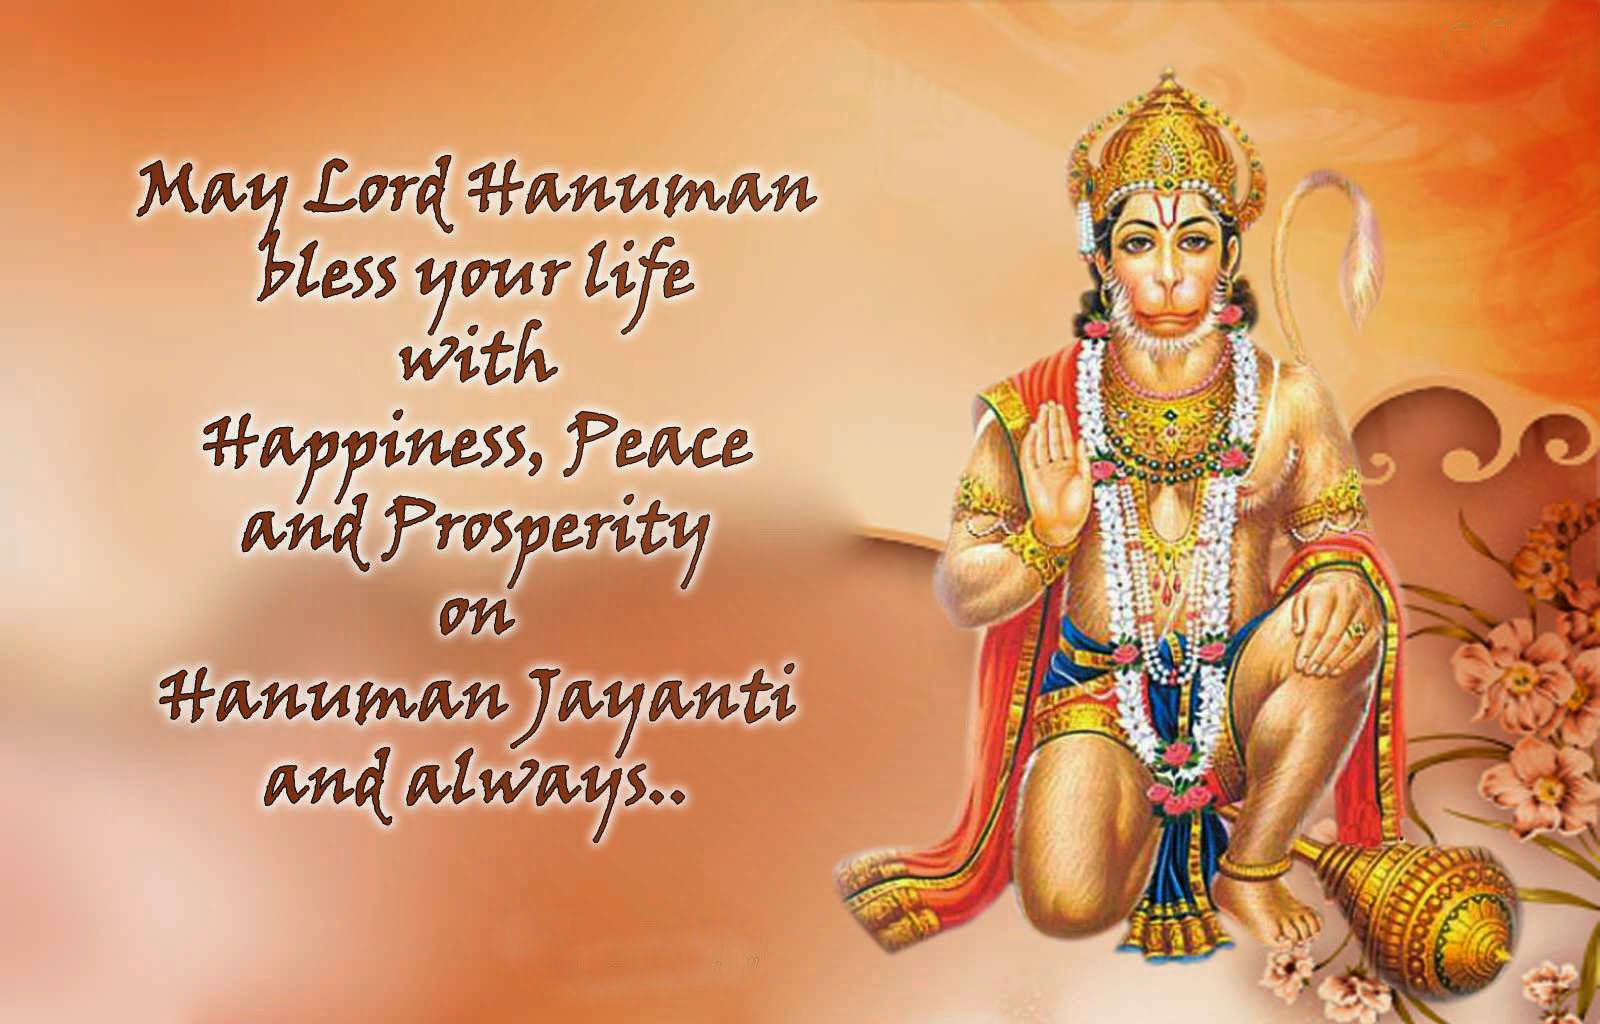 Hanuman Jayanthi Images HD Wallpapers – Happy Hanuman Jayanthi ...